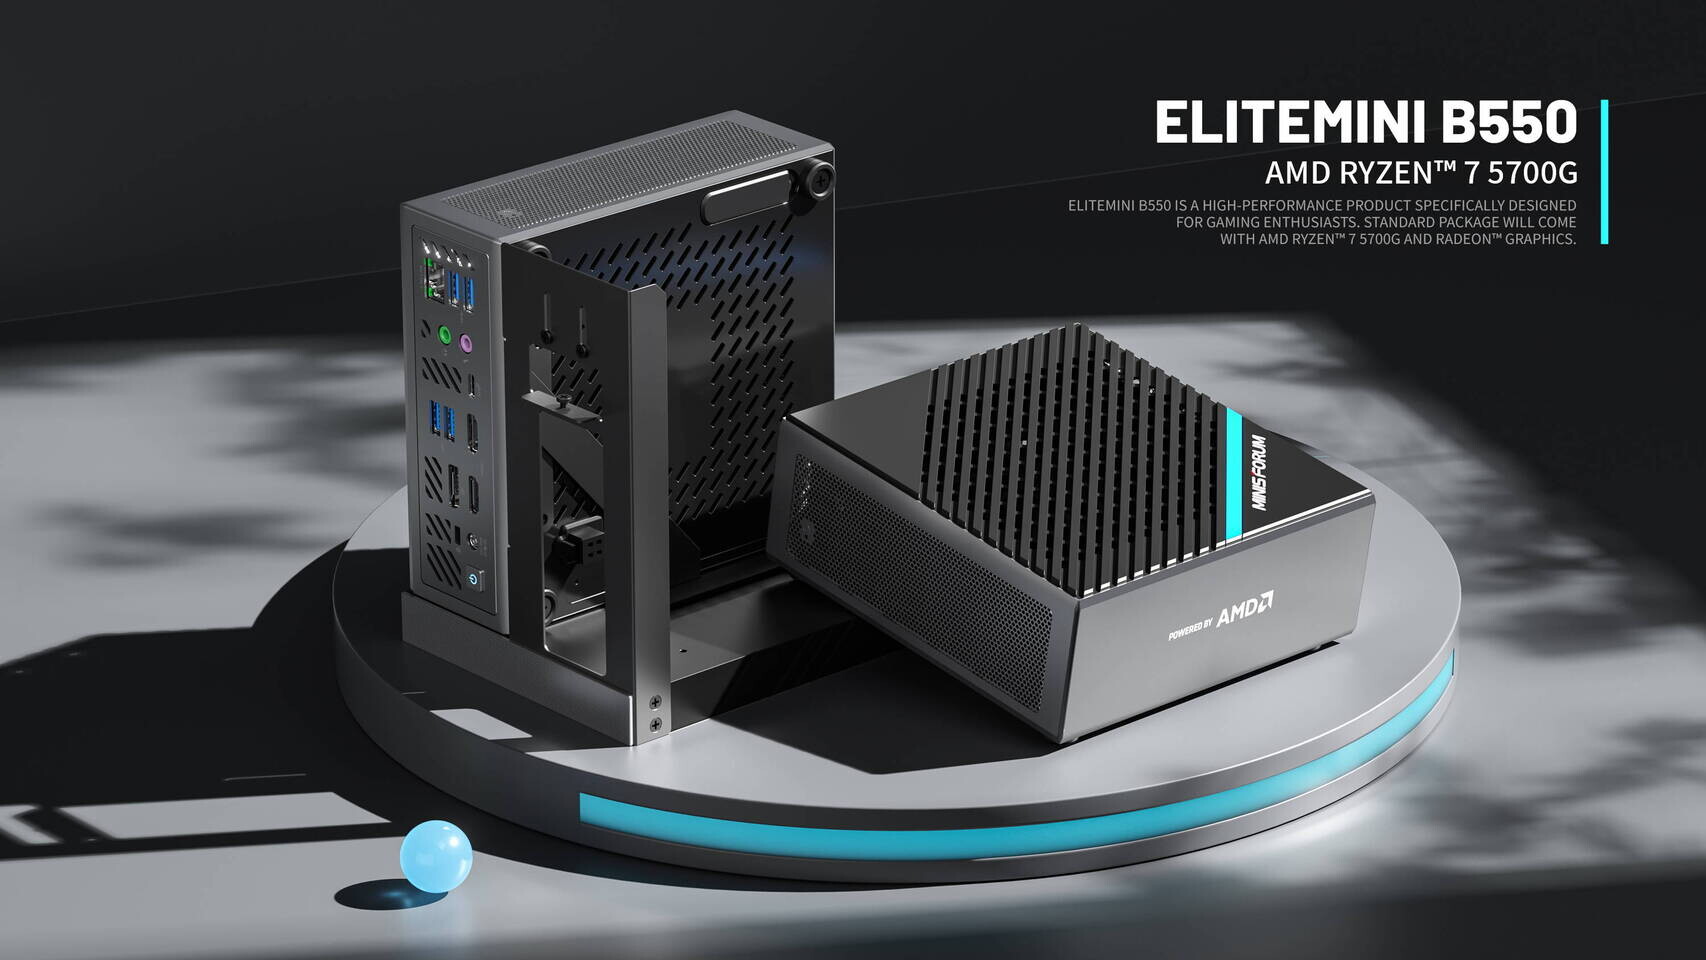 MINISFORUM Announces Elitemini B550 Mini-PC with Ryzen 7 5700G APU